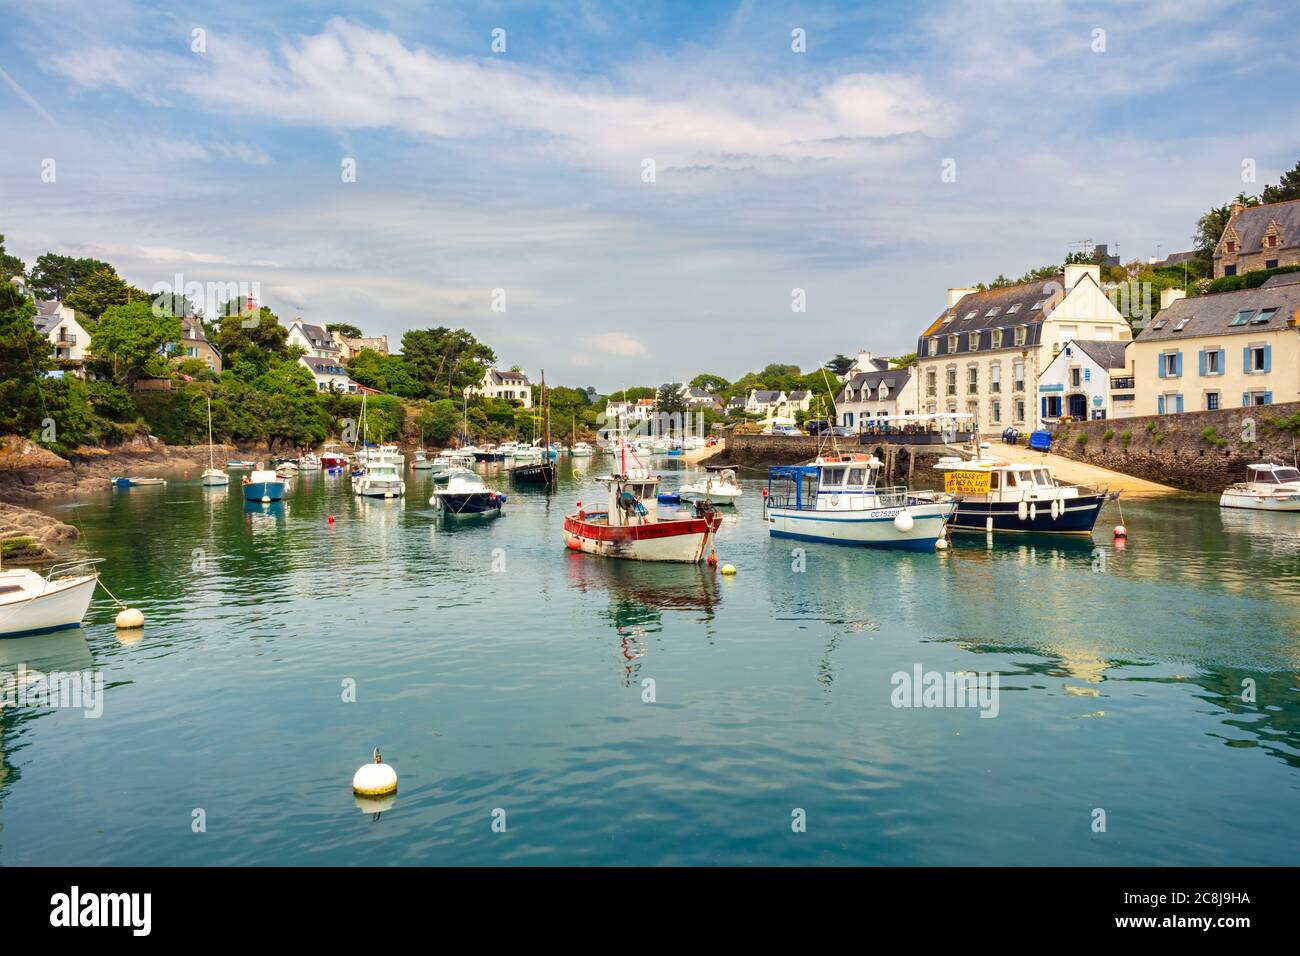 PORT DE DOËLAN, BRETAGNE, FRANCE : l'un des rares ports qui préservent toutes les coutumes des ports de pêche bretons typiques. Banque D'Images